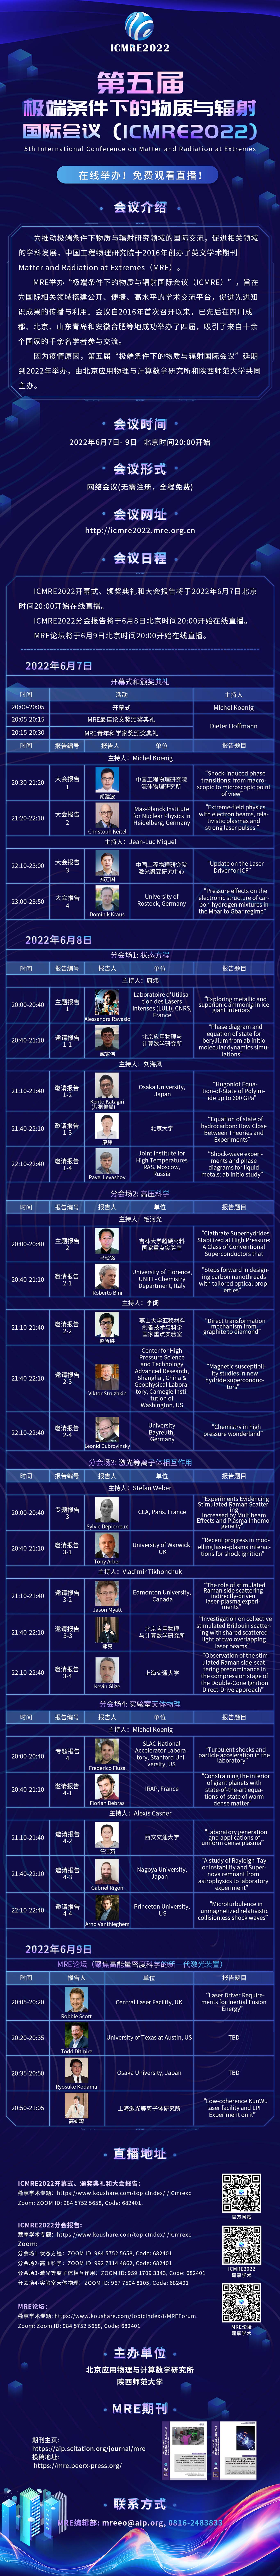 国际会议日程海报网页中文版1.jpg